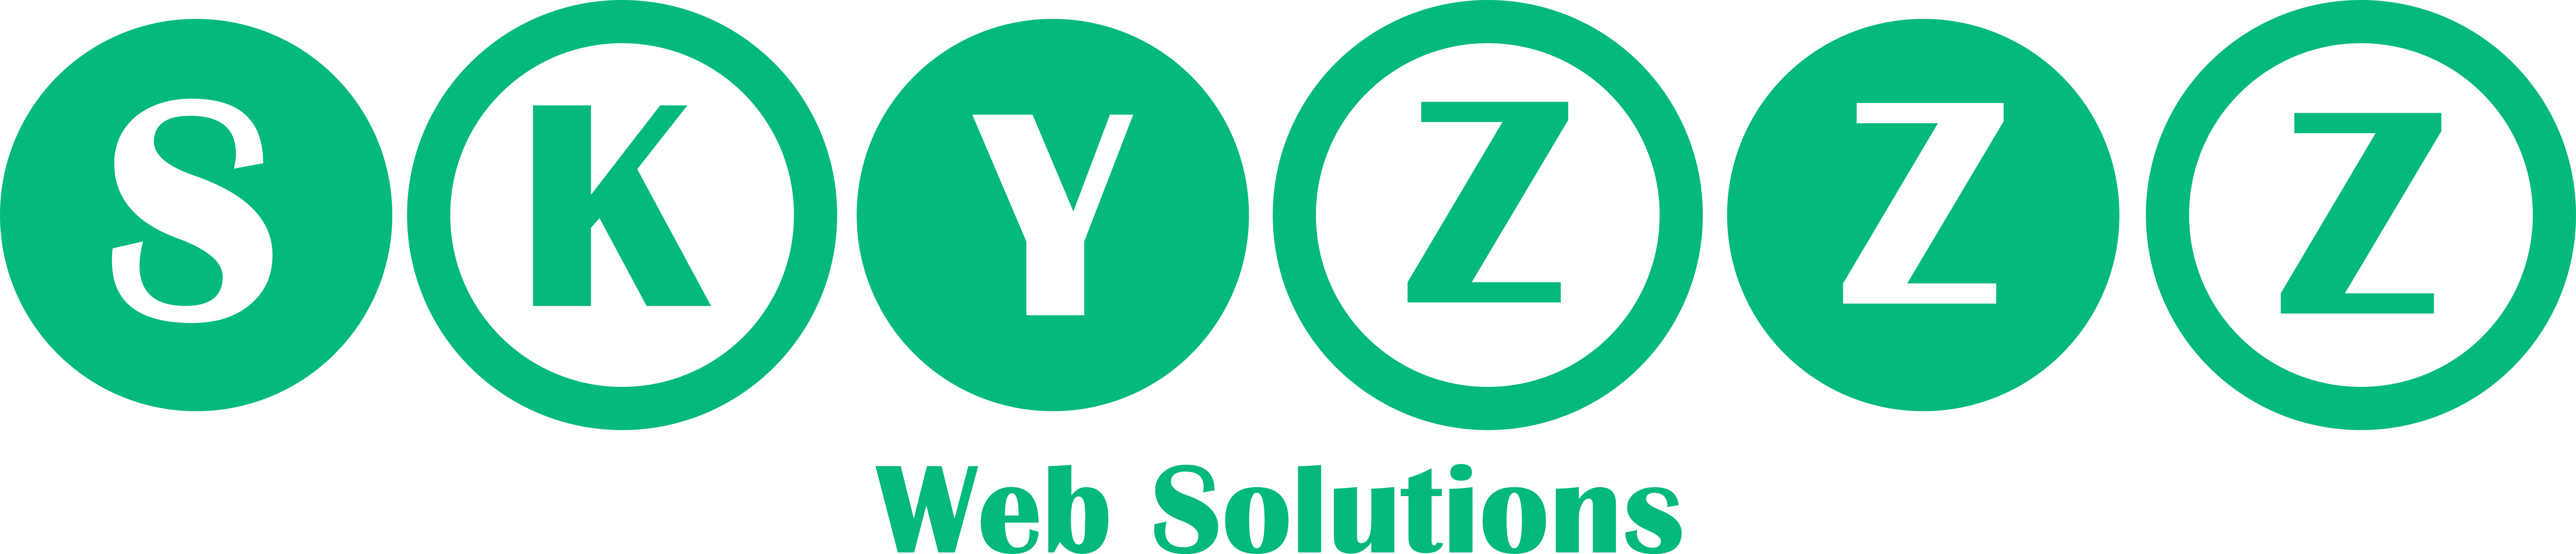 Skyzzz Web Solutions